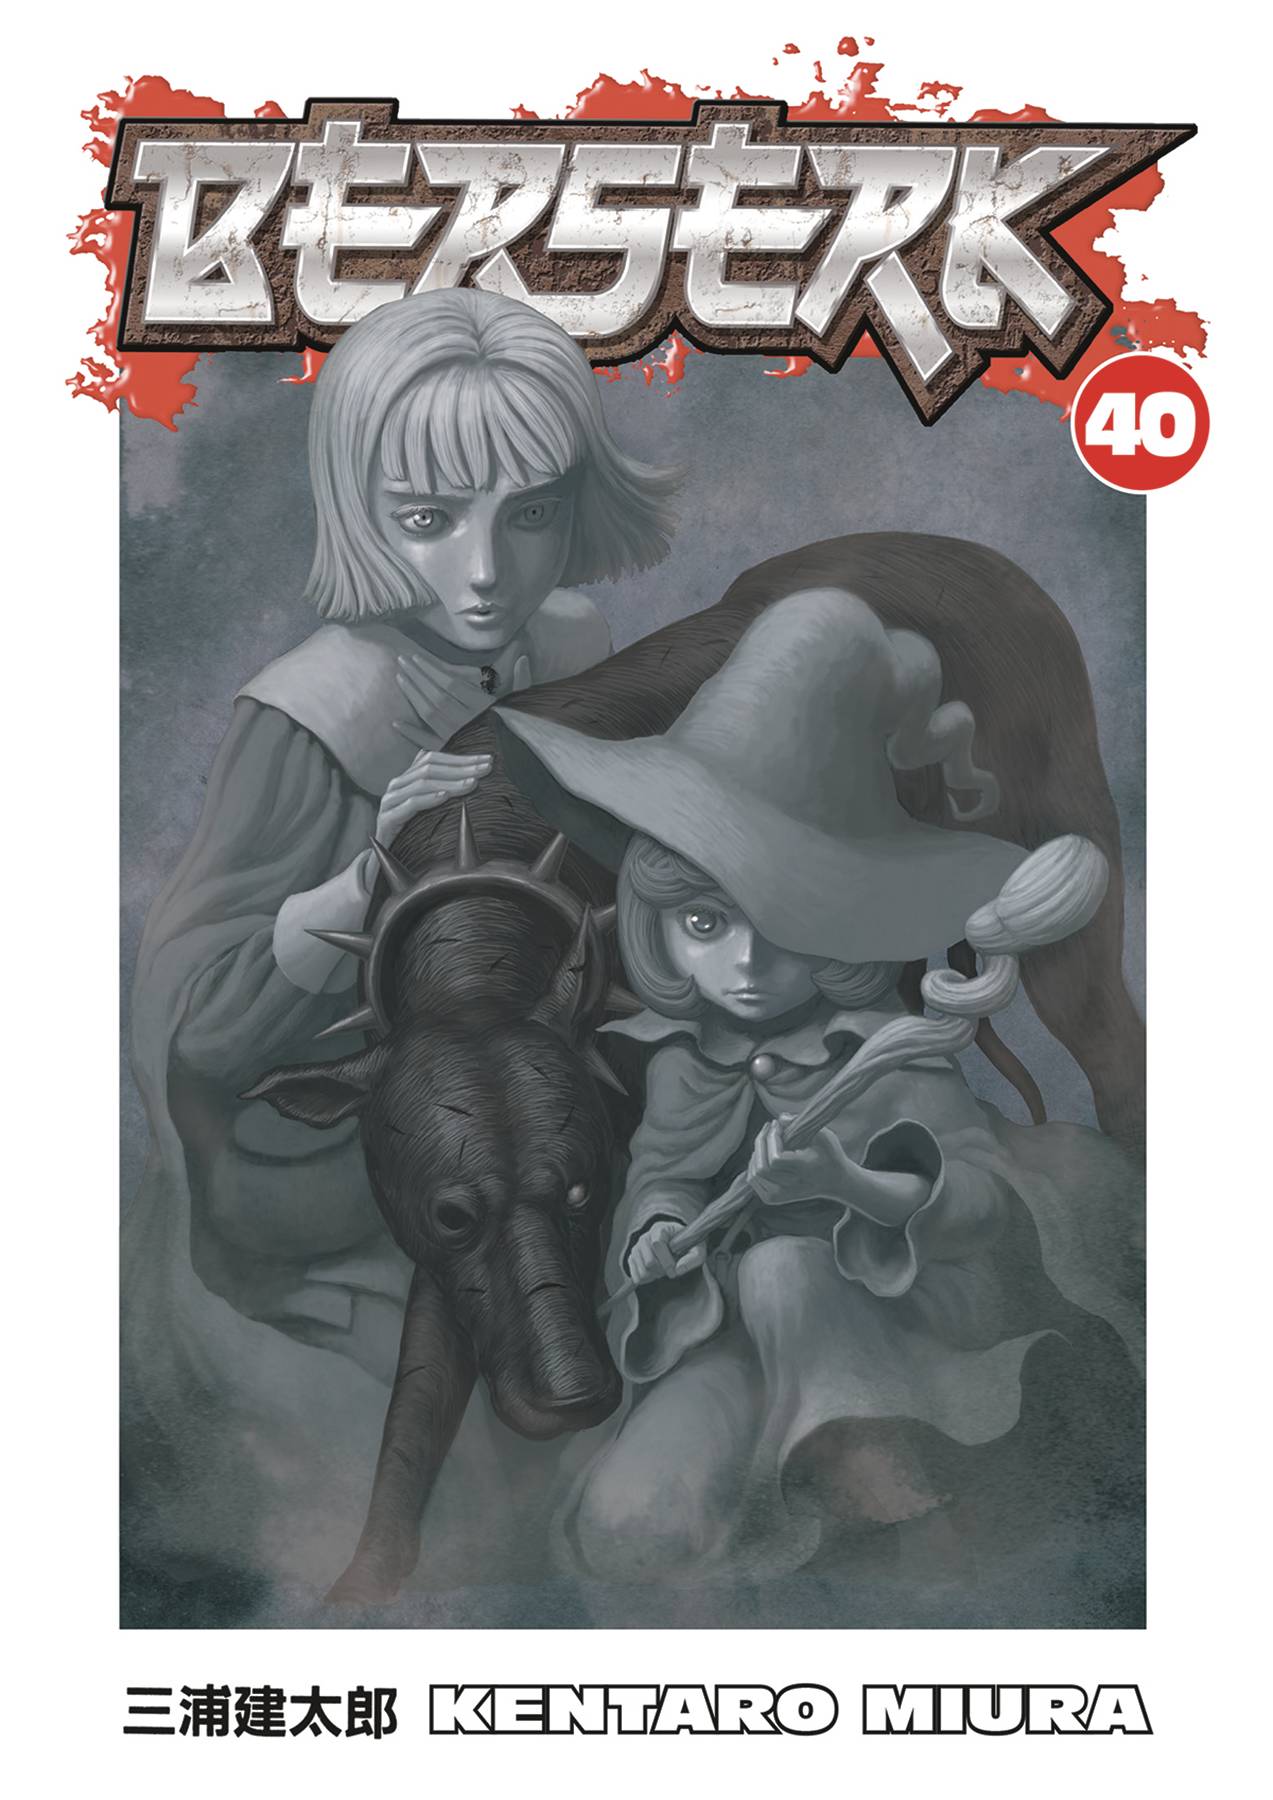 Berserk Manga Volume 40